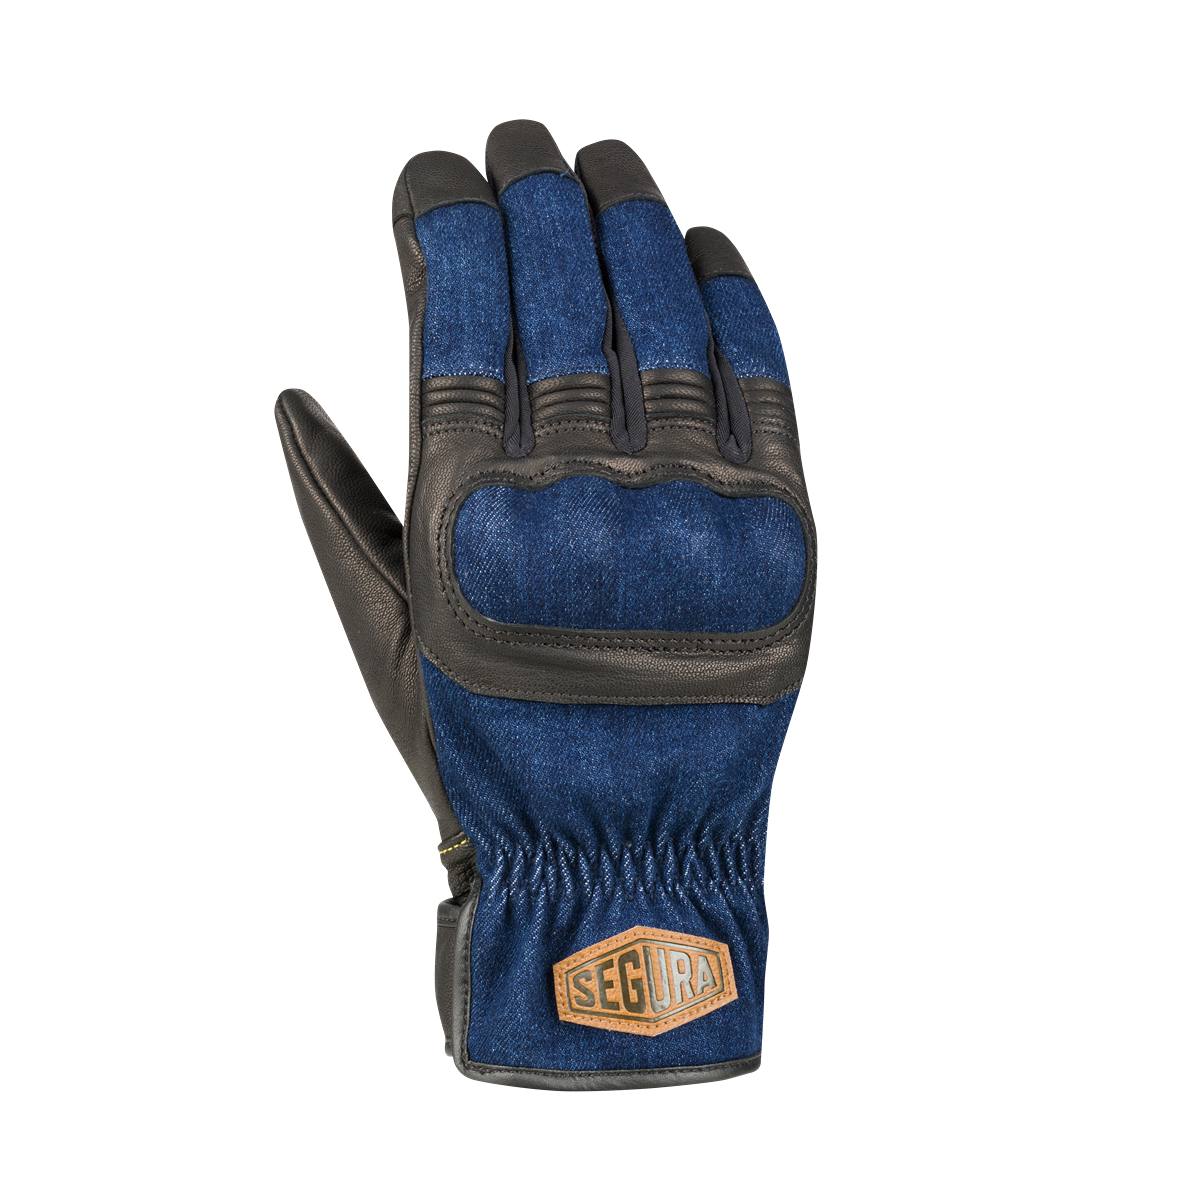 Image of Segura Hunky Gloves Black Blue Size T10 EN